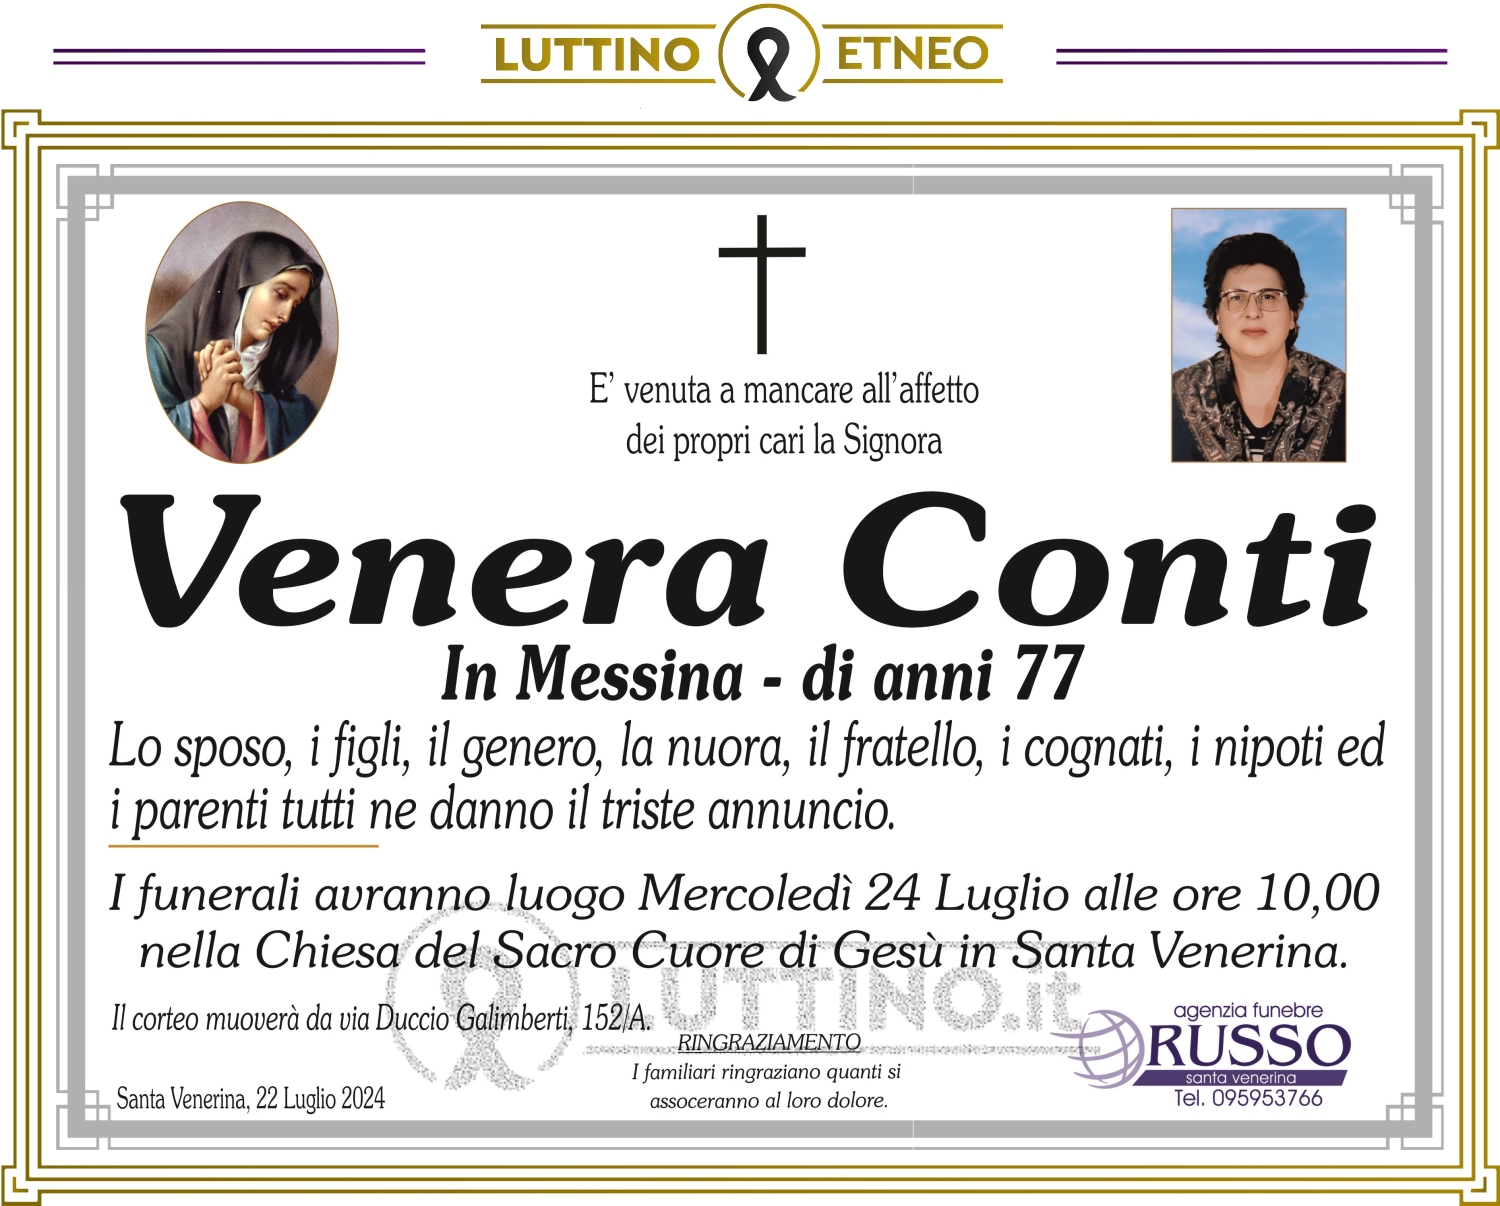 Venera Conti